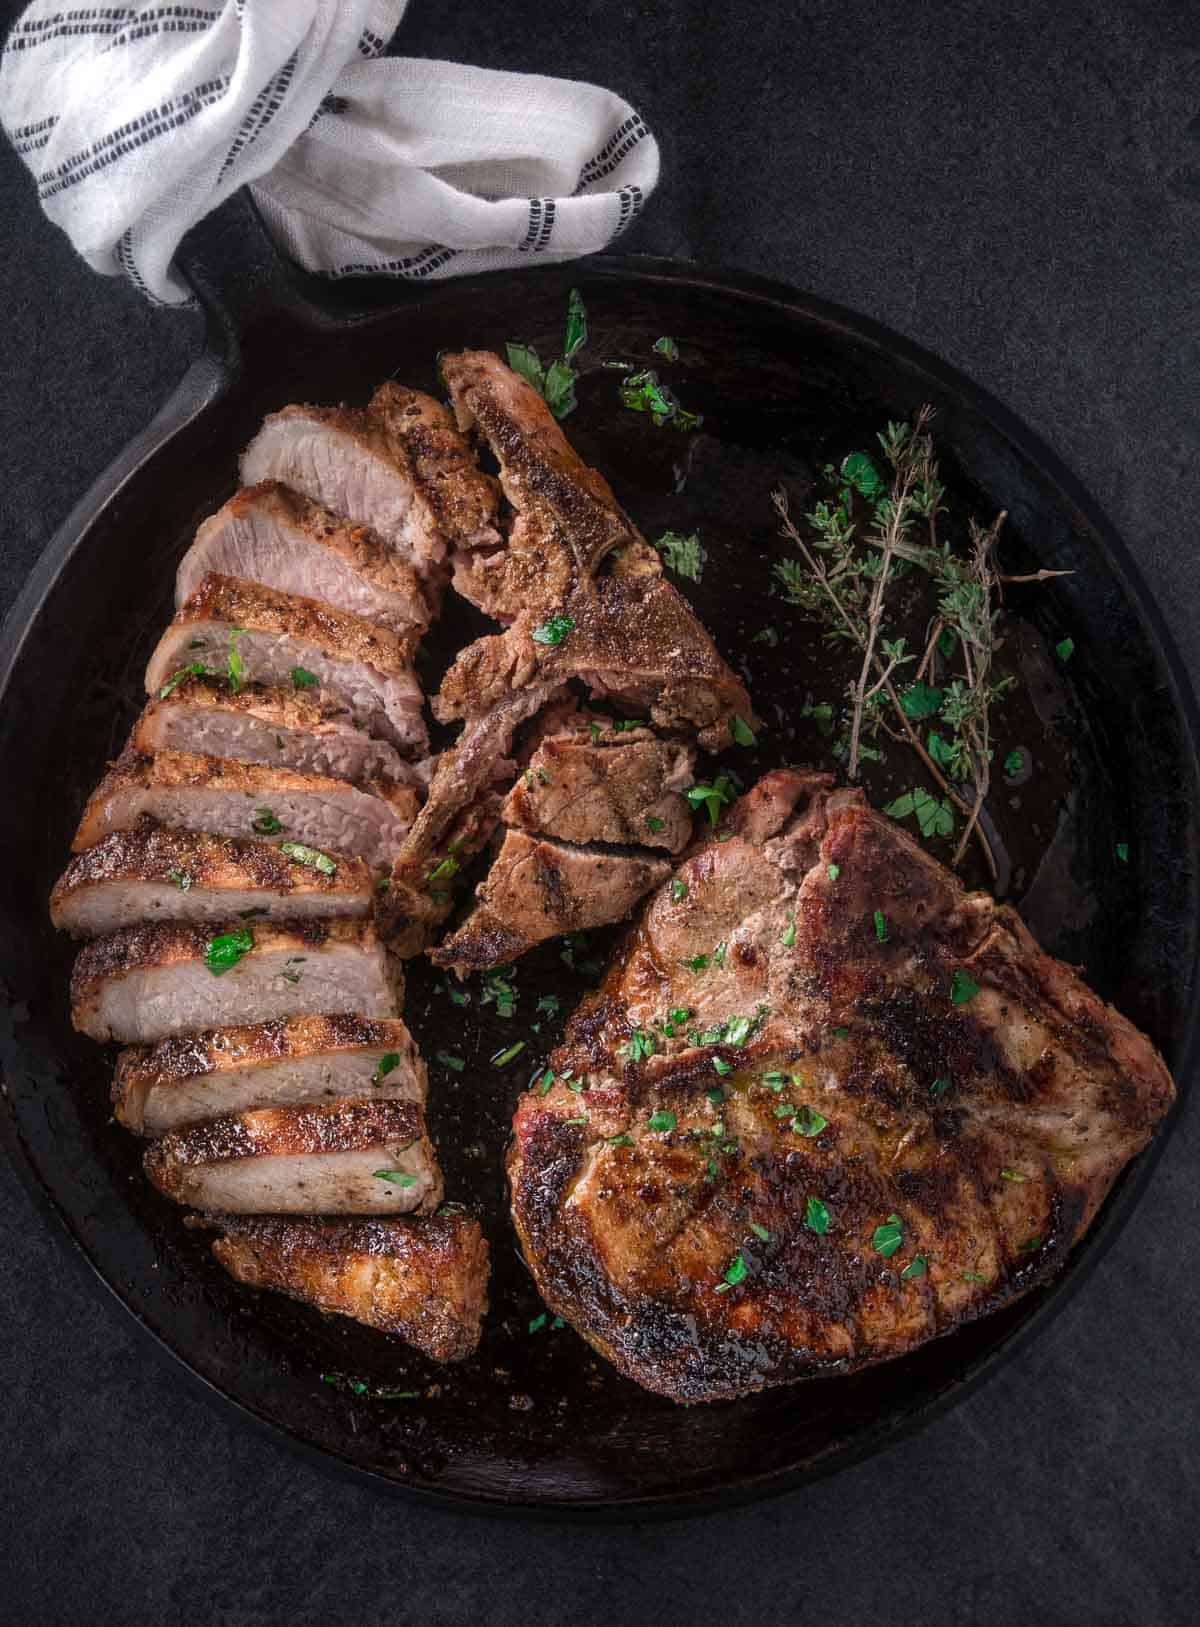 Two grilled pork steaks on a serving platter